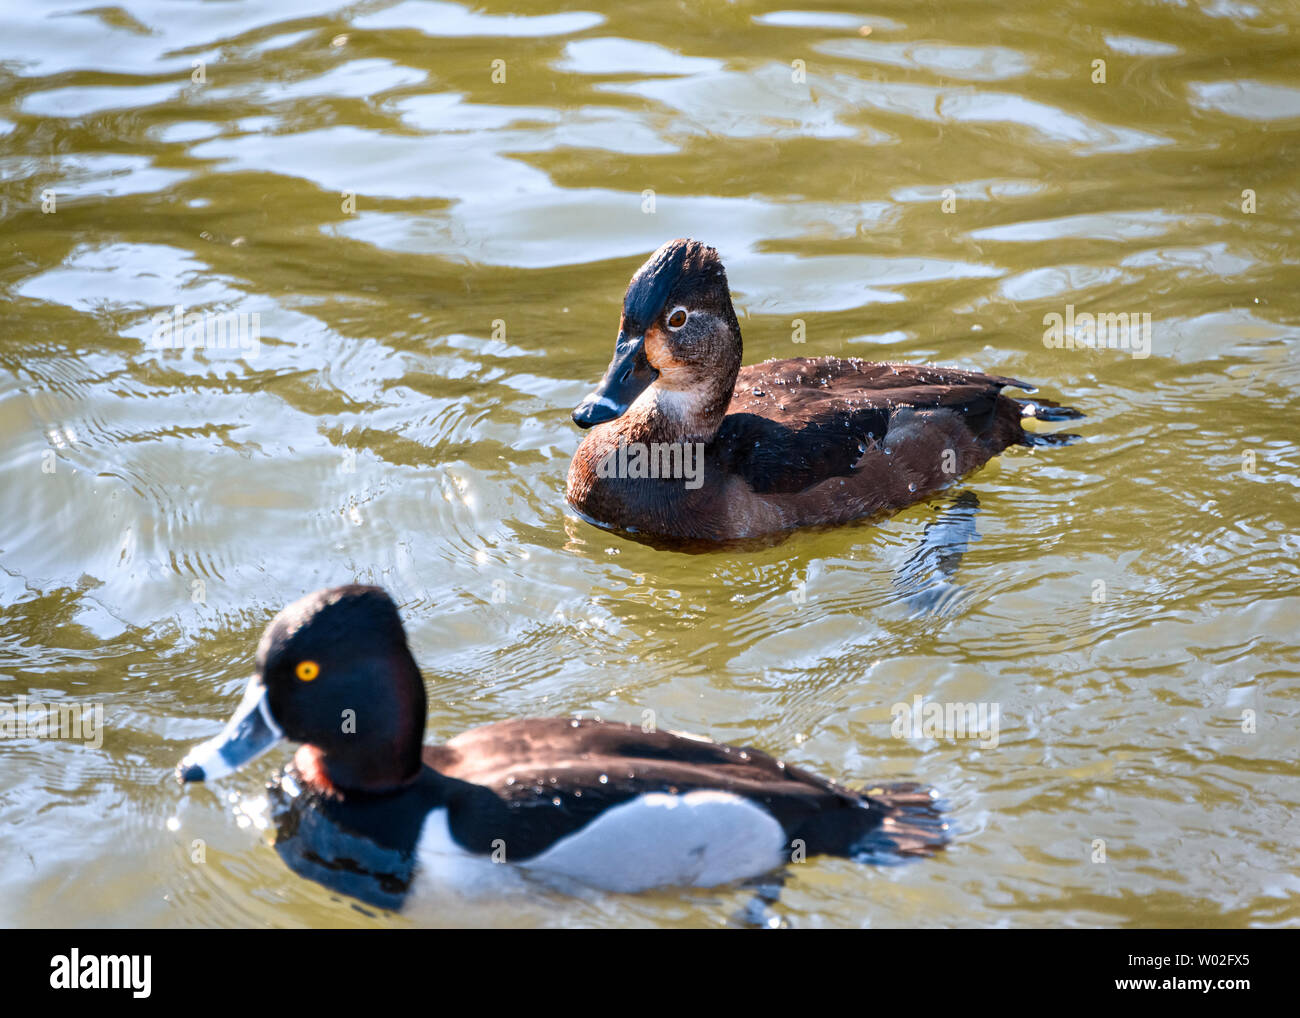 Magnifique canard femelle et mâle à col annulaire nageant dans le lac . Oiseaux bruns et noirs. Note grise à rayures et yeux jaunes intenses. Anneau rouge autour de n Banque D'Images